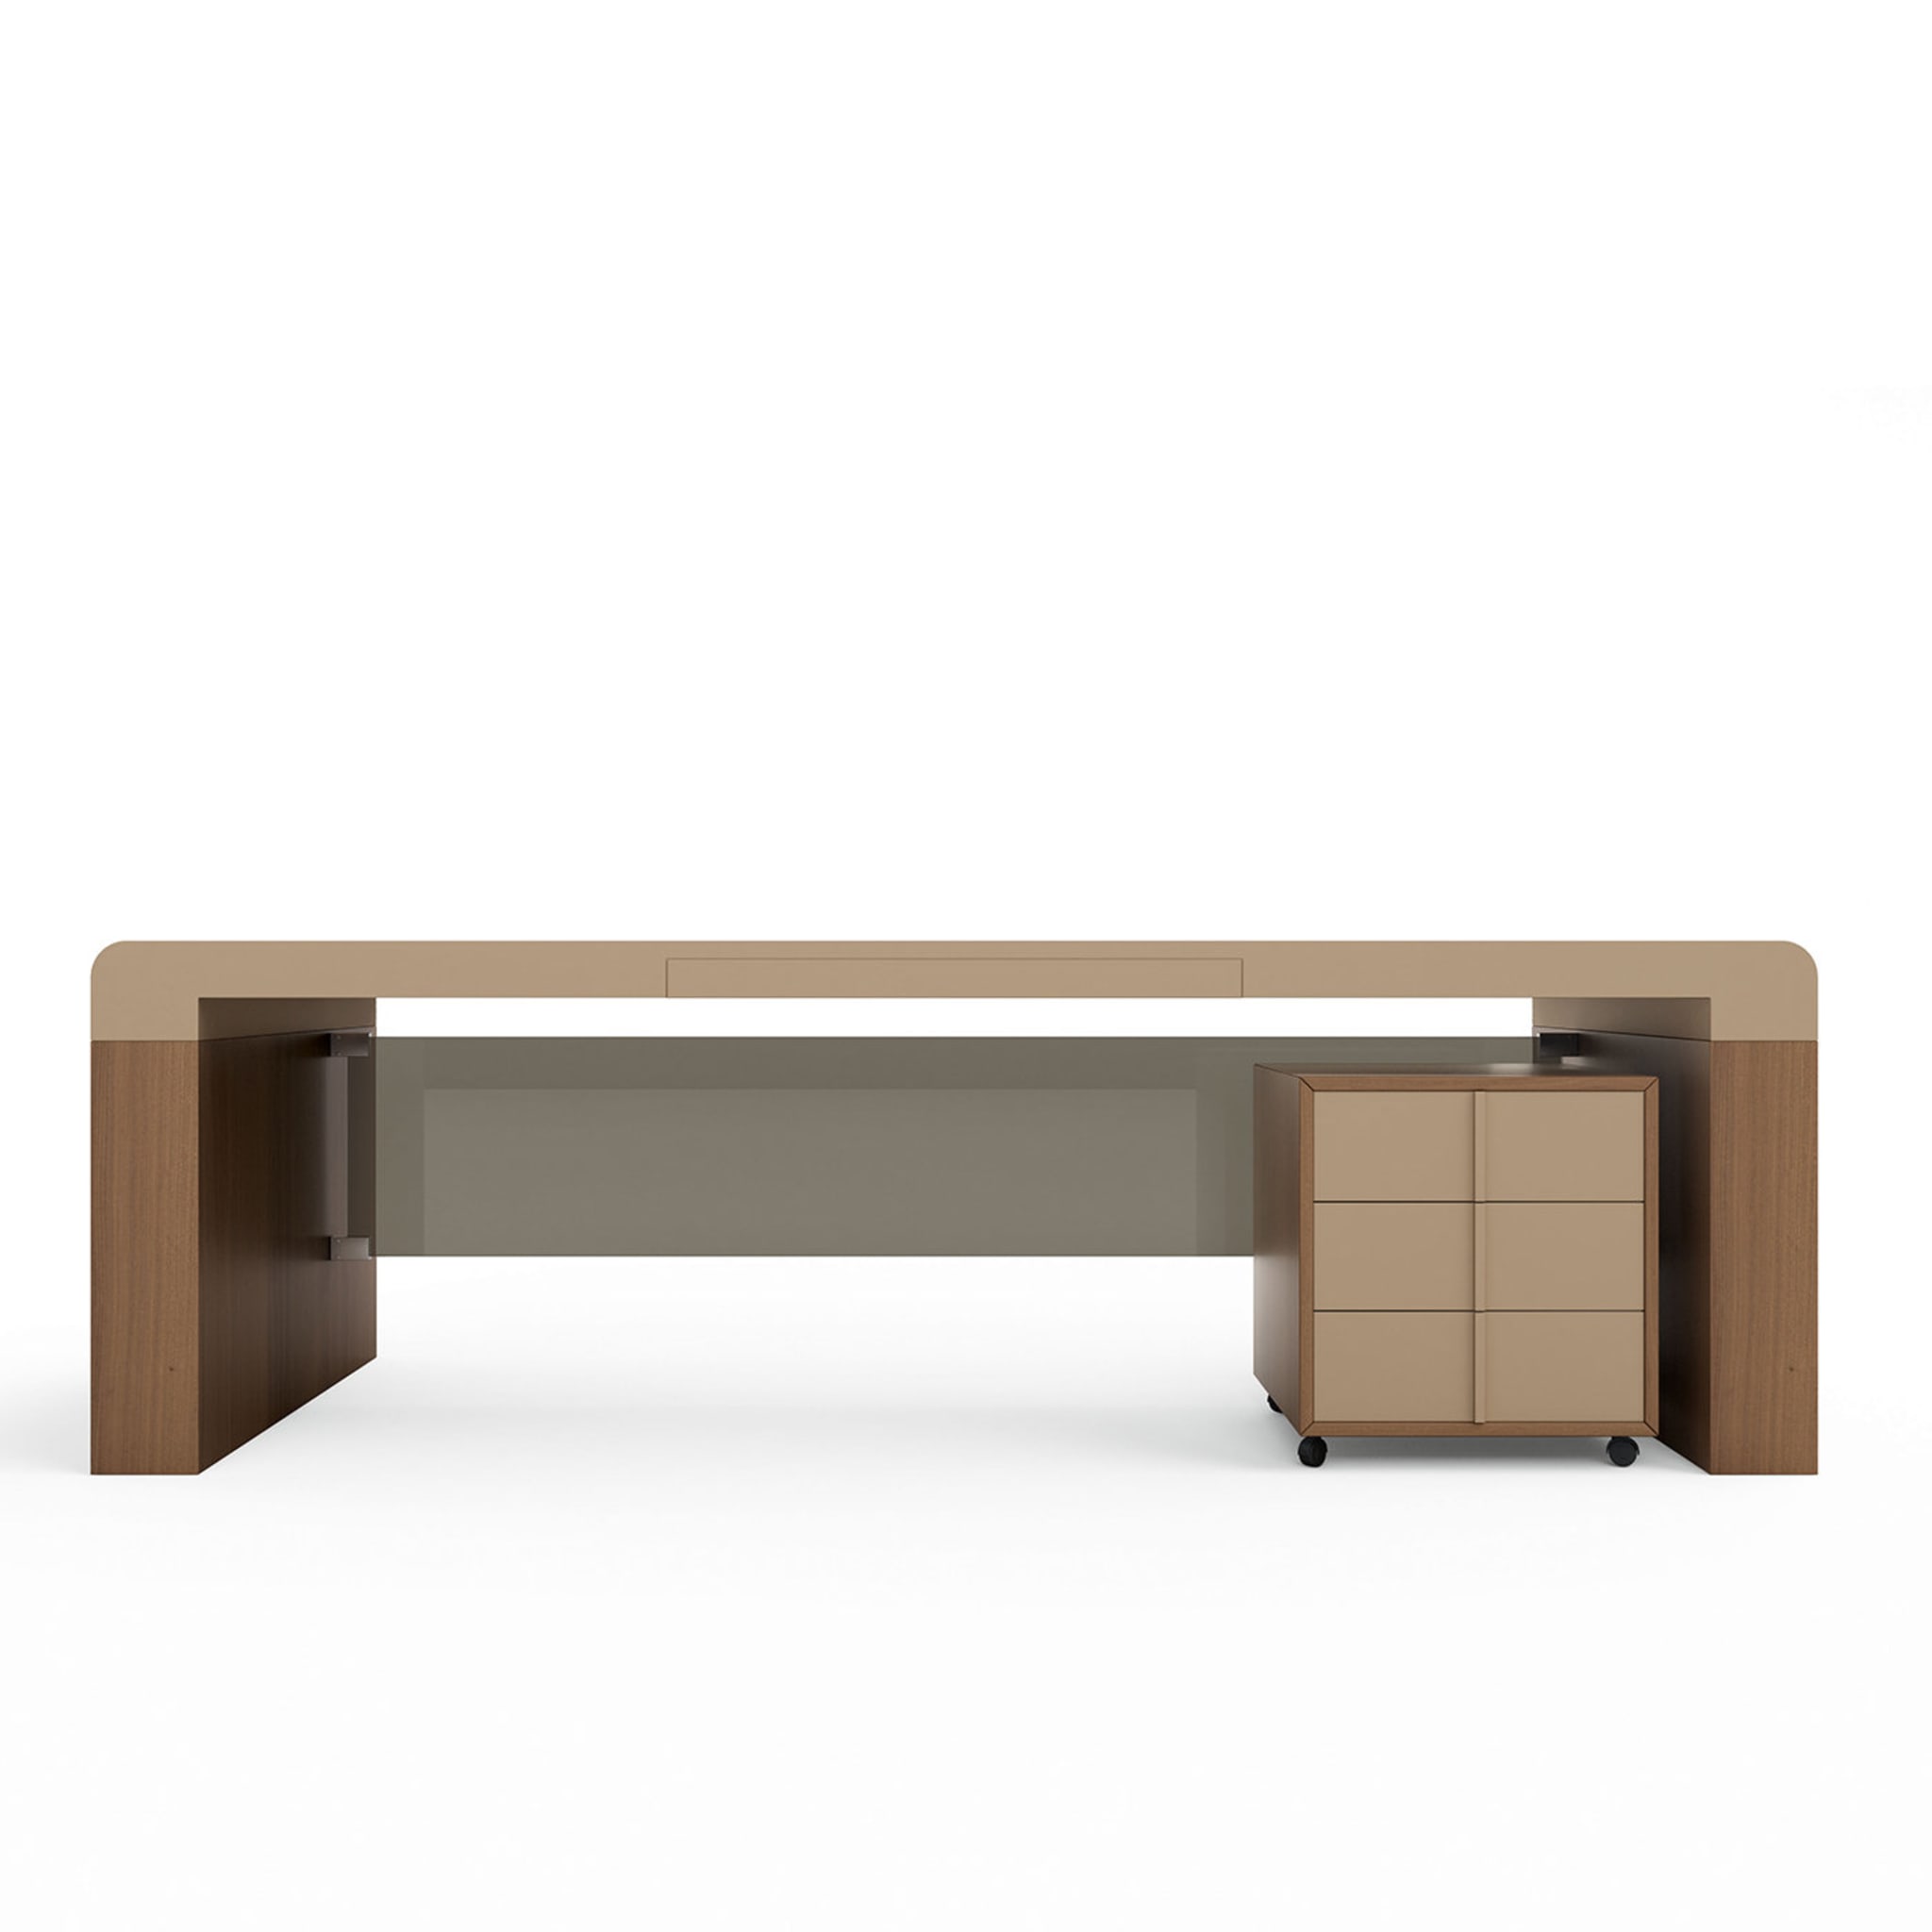 Fusion Desk by Daniele lo Scalzo Moscheri - Alternative view 3